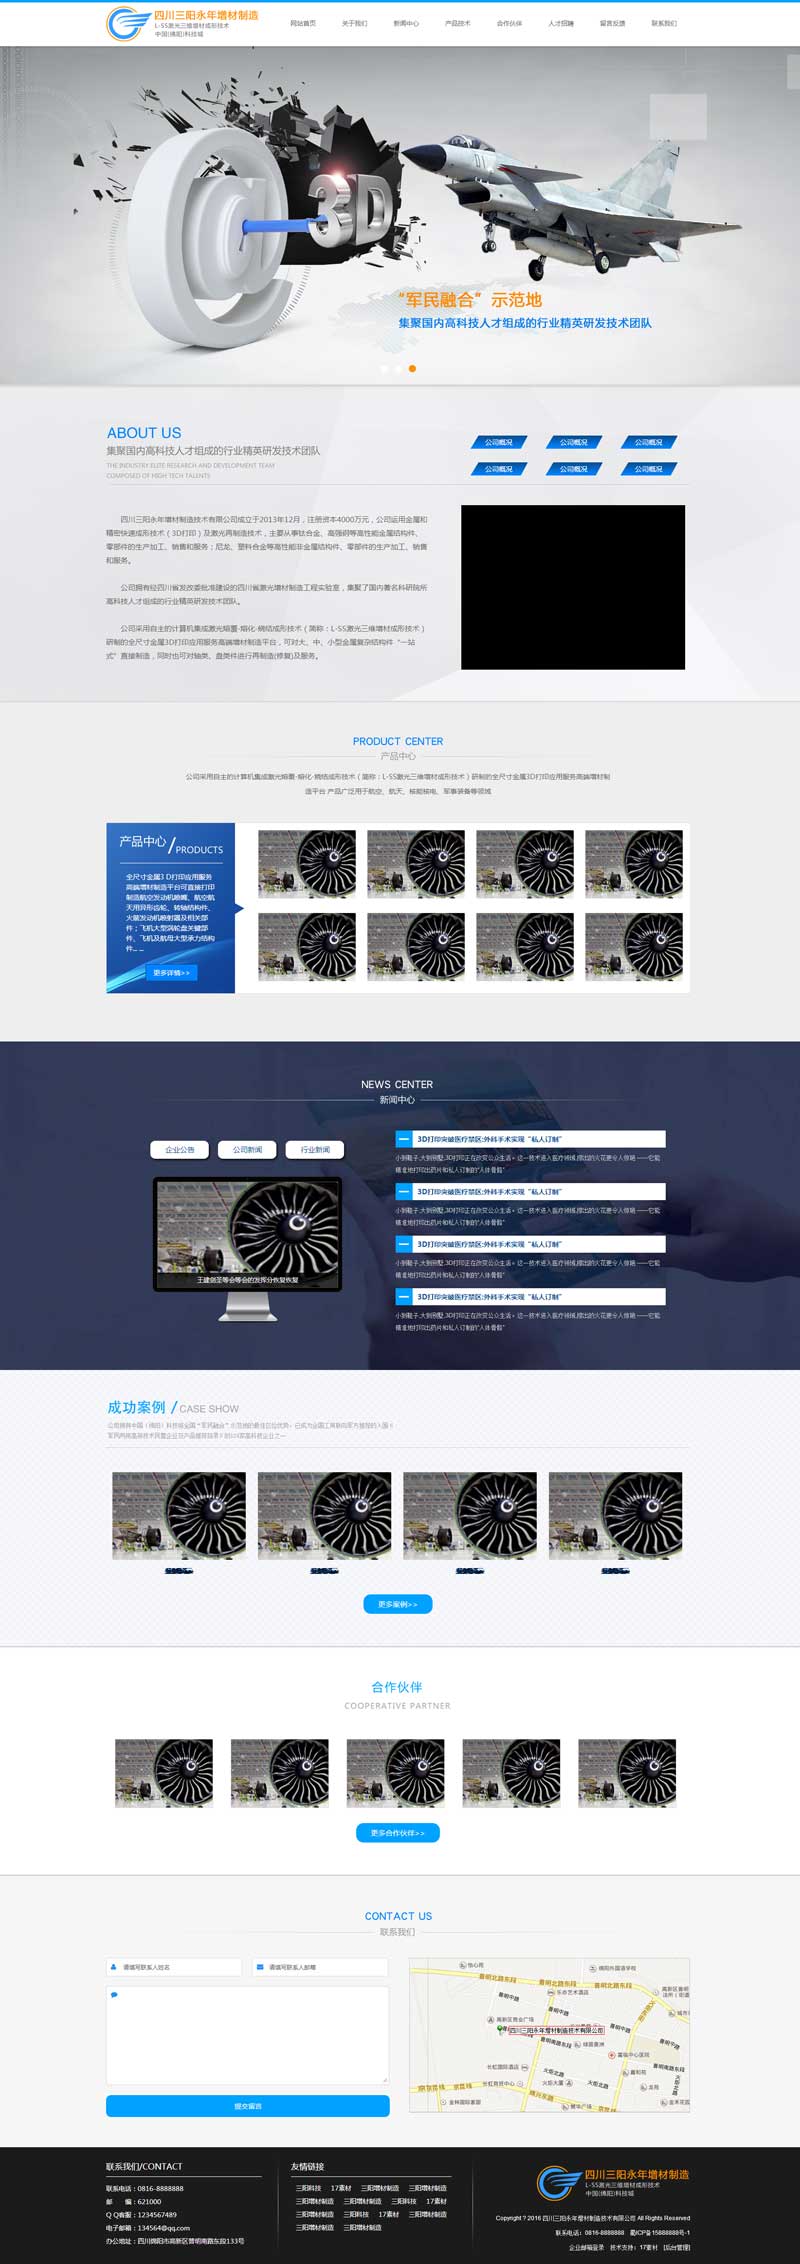 蓝色大气的机械设备制造企业网站模板